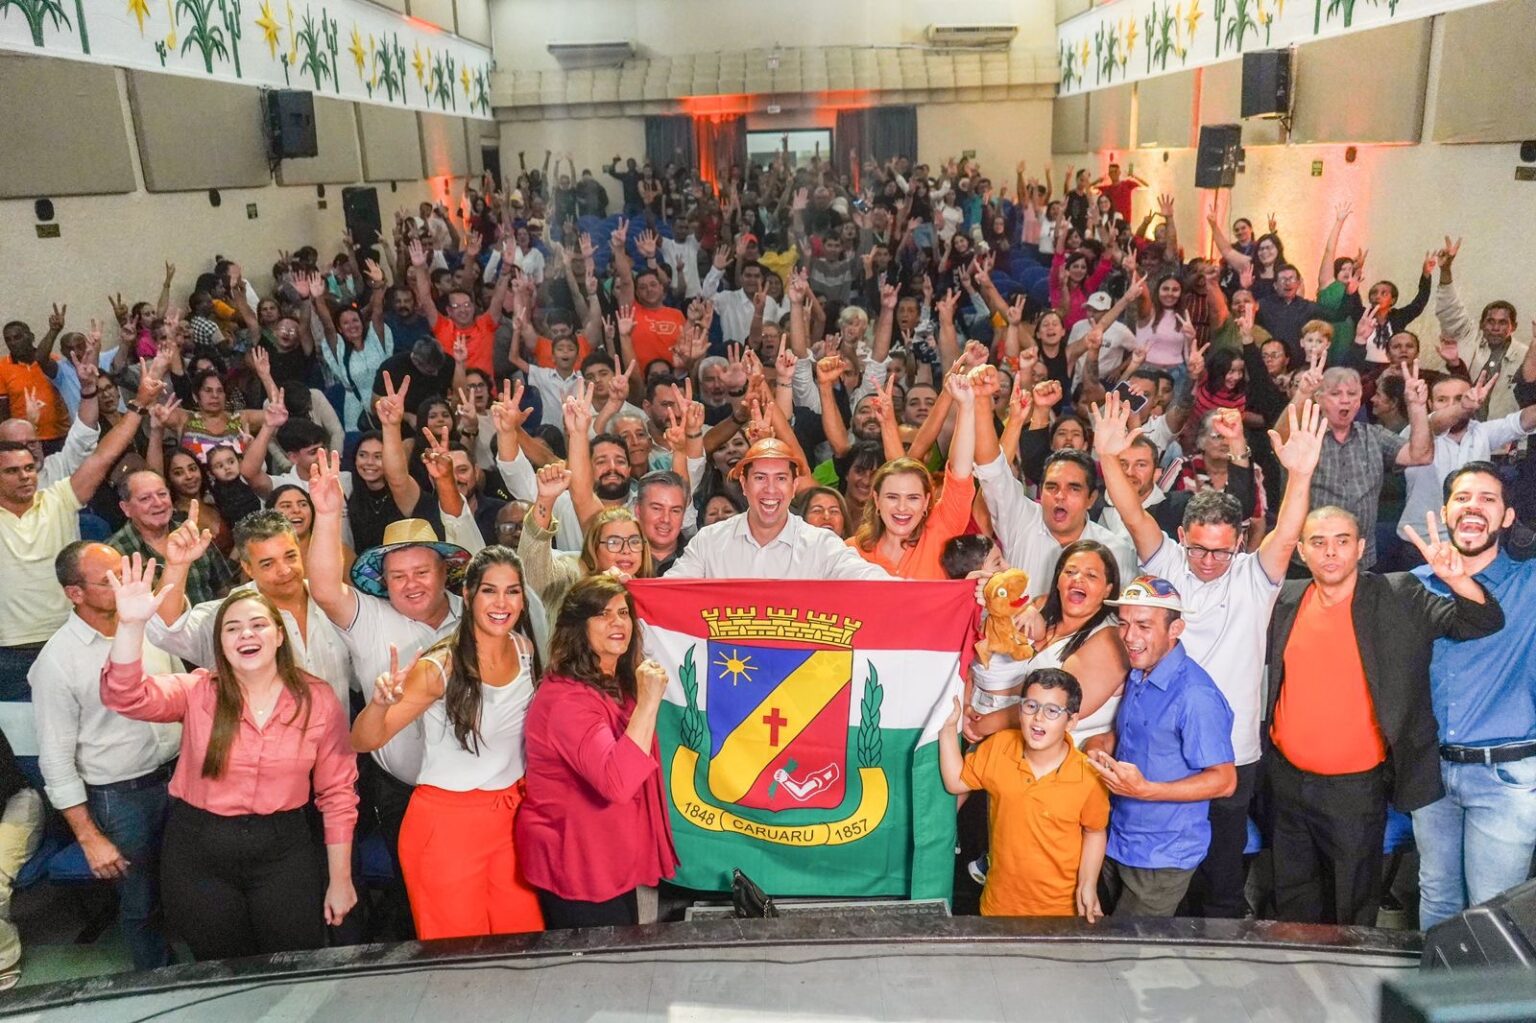  Armandinho Confirma Convenção do Solidariedade para Disputa pela Prefeitura de Caruaru